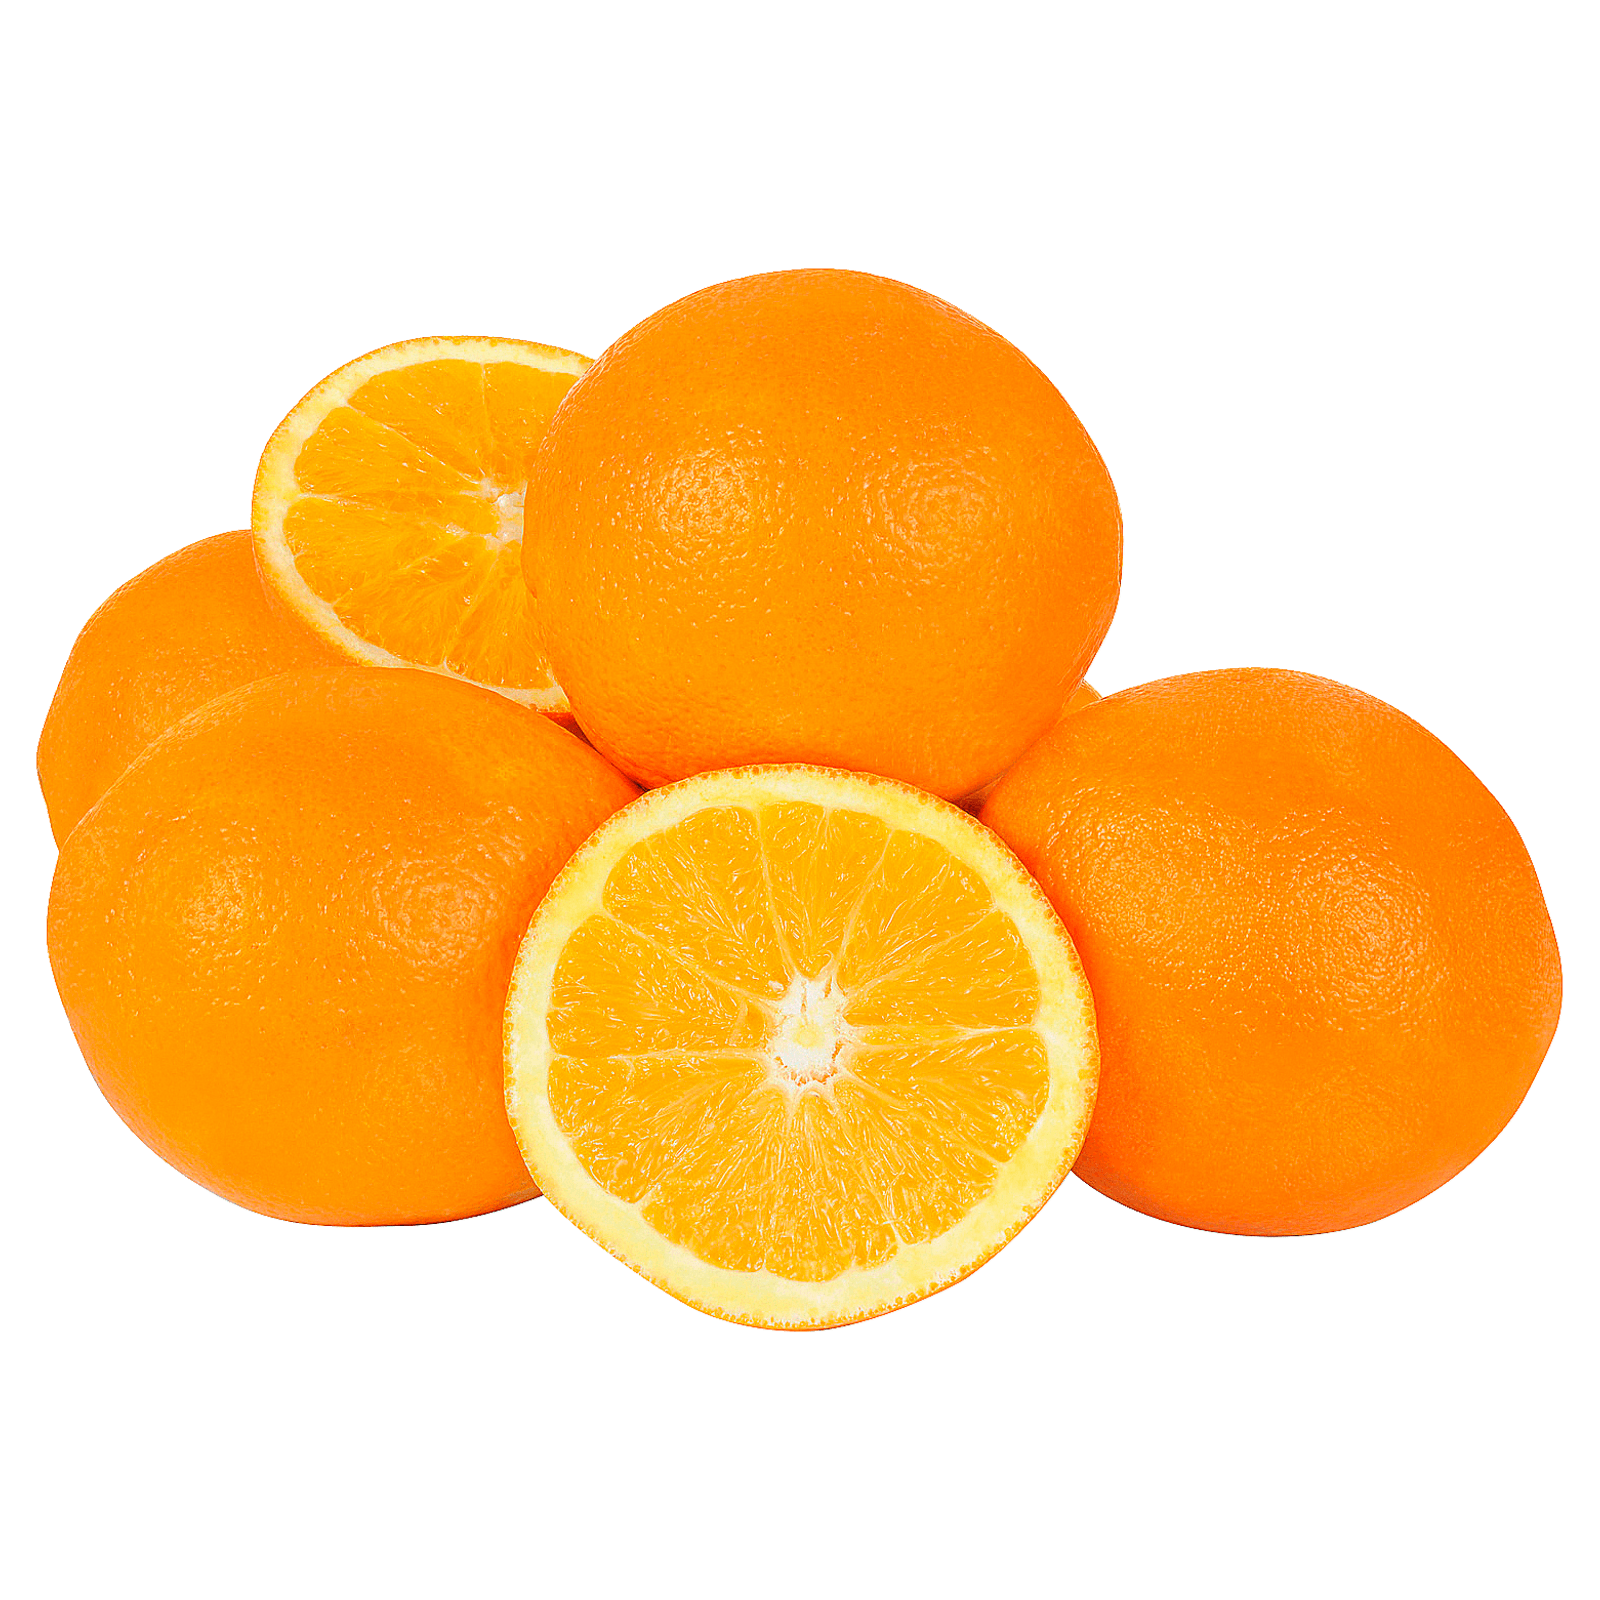 bei Bio bestellen! online Netz Orangen REWE im 1kg REWE